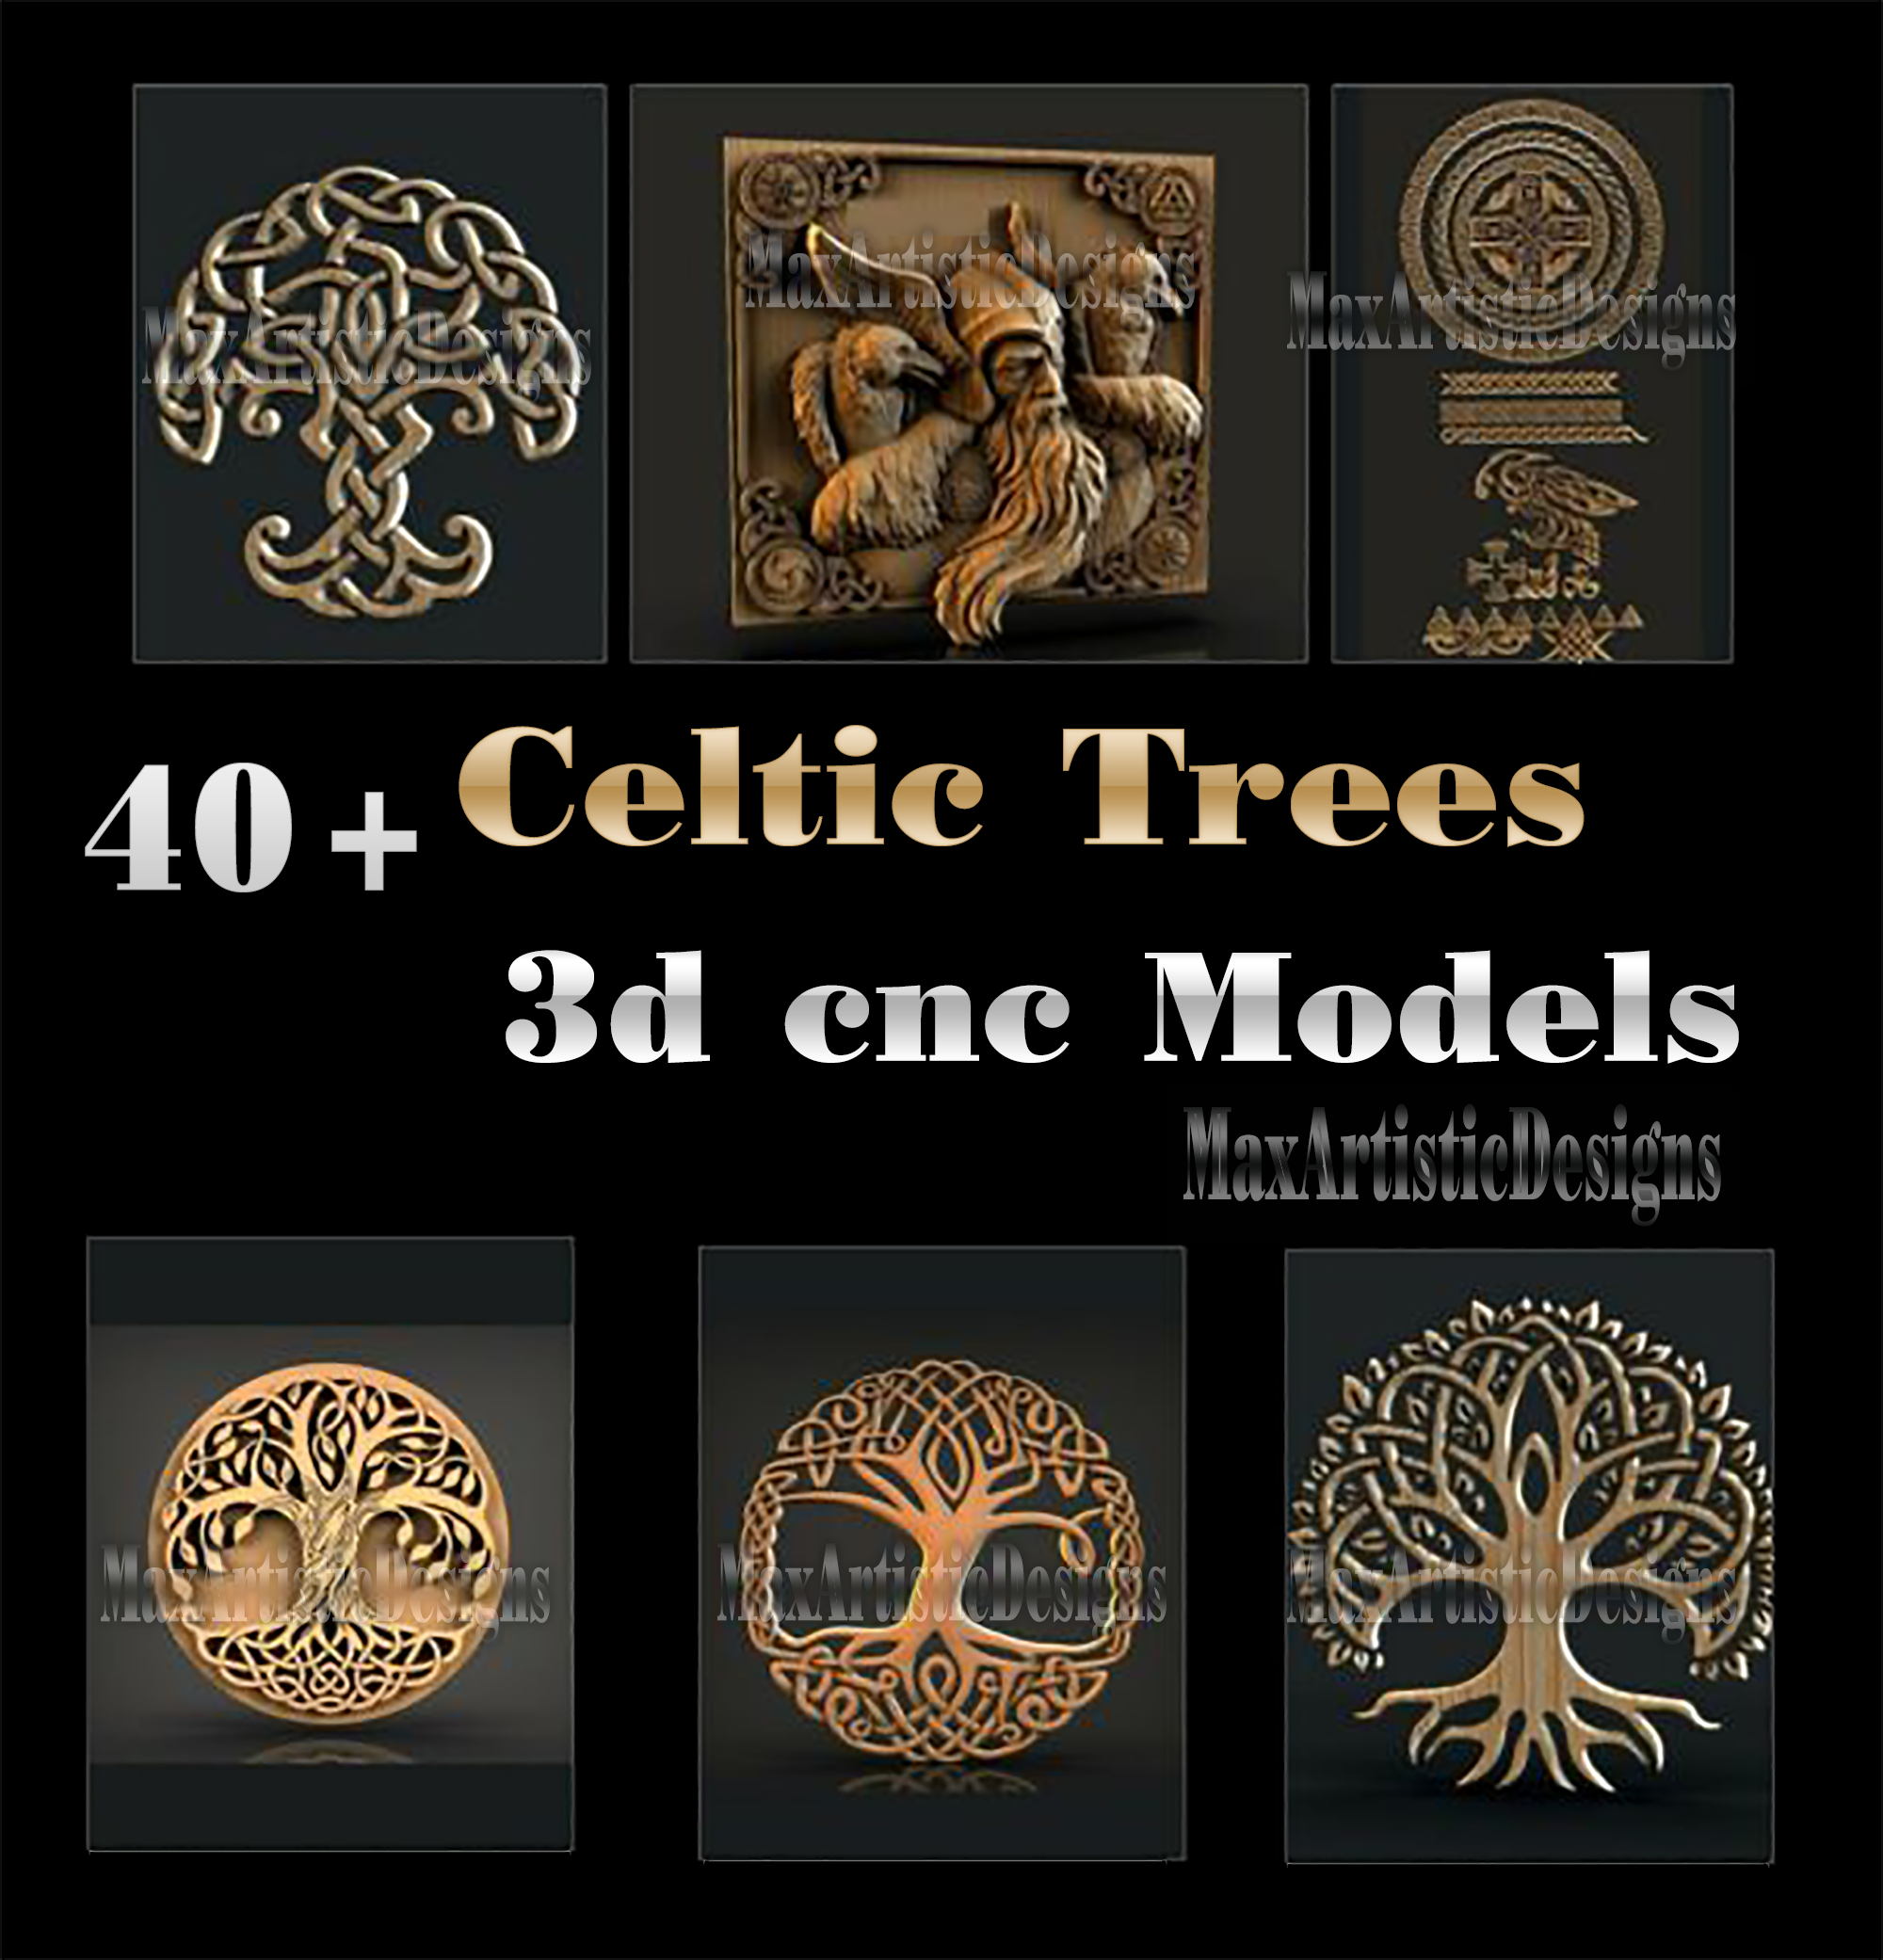 52 pezzi 3d antico celtico/albero della vita file stl per artcam, aspire e cnc router engraver carving download digitale